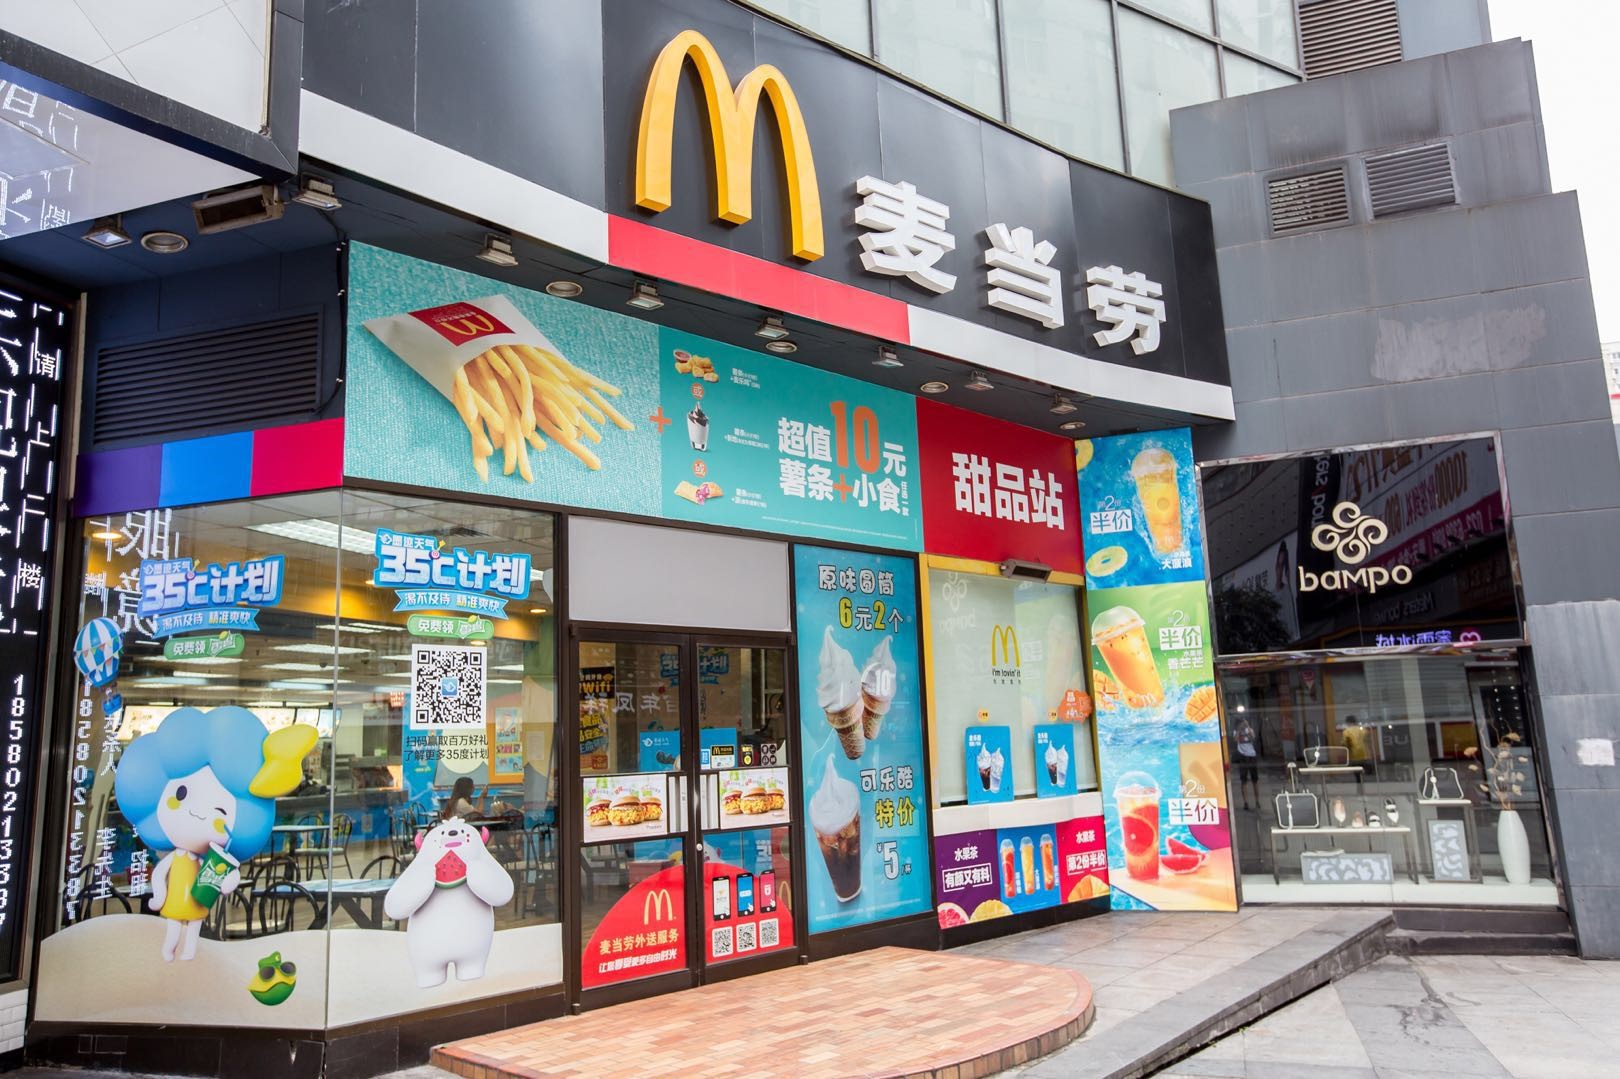 麦当劳第三季度净利润同比增加10% 中国市场可比销售仍呈负增长 | 每日经济网